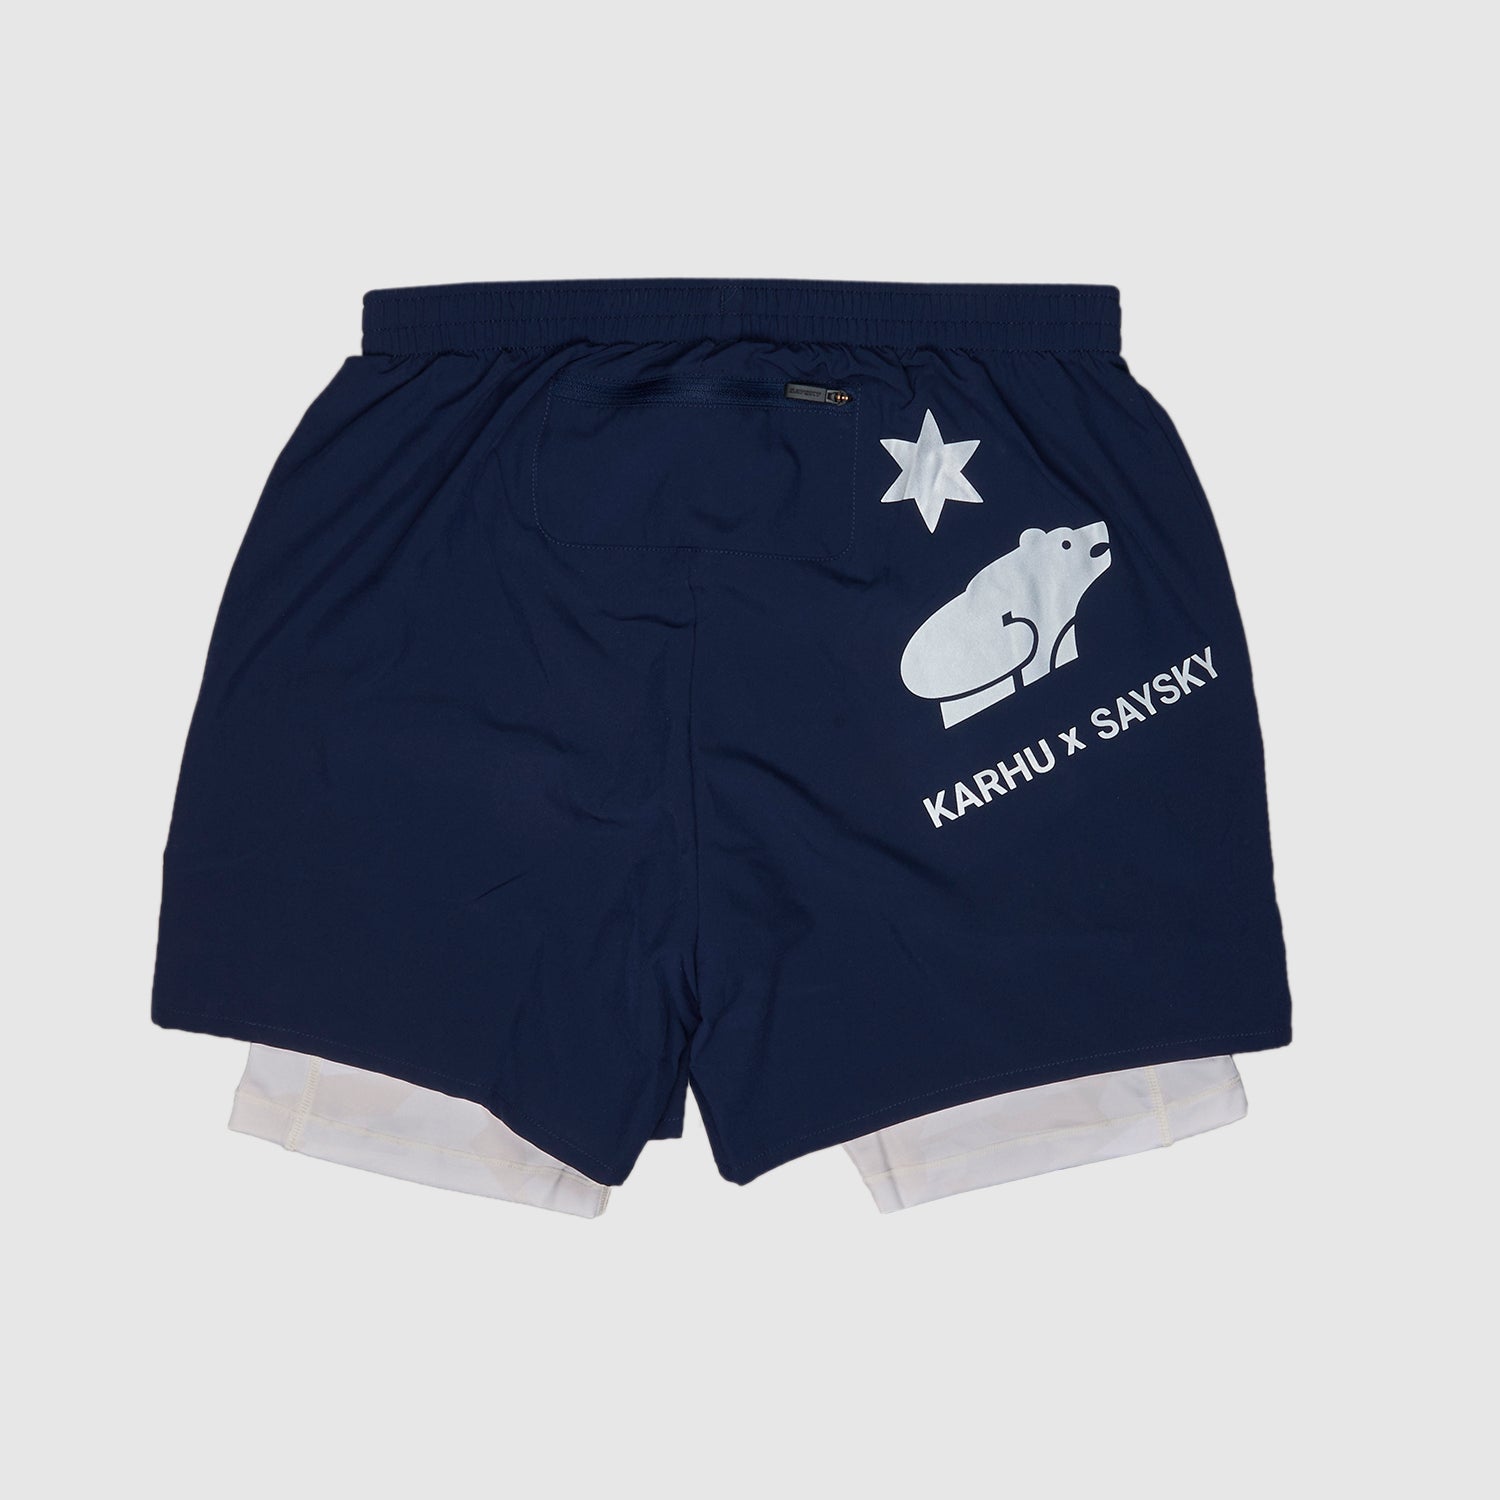 【オフィシャルWEB限定】ランニングショーツ ZMRSH10 2-in-1 Shorts Karhu X SAYSKY - Maritime Blue  [ユニセックス] XS